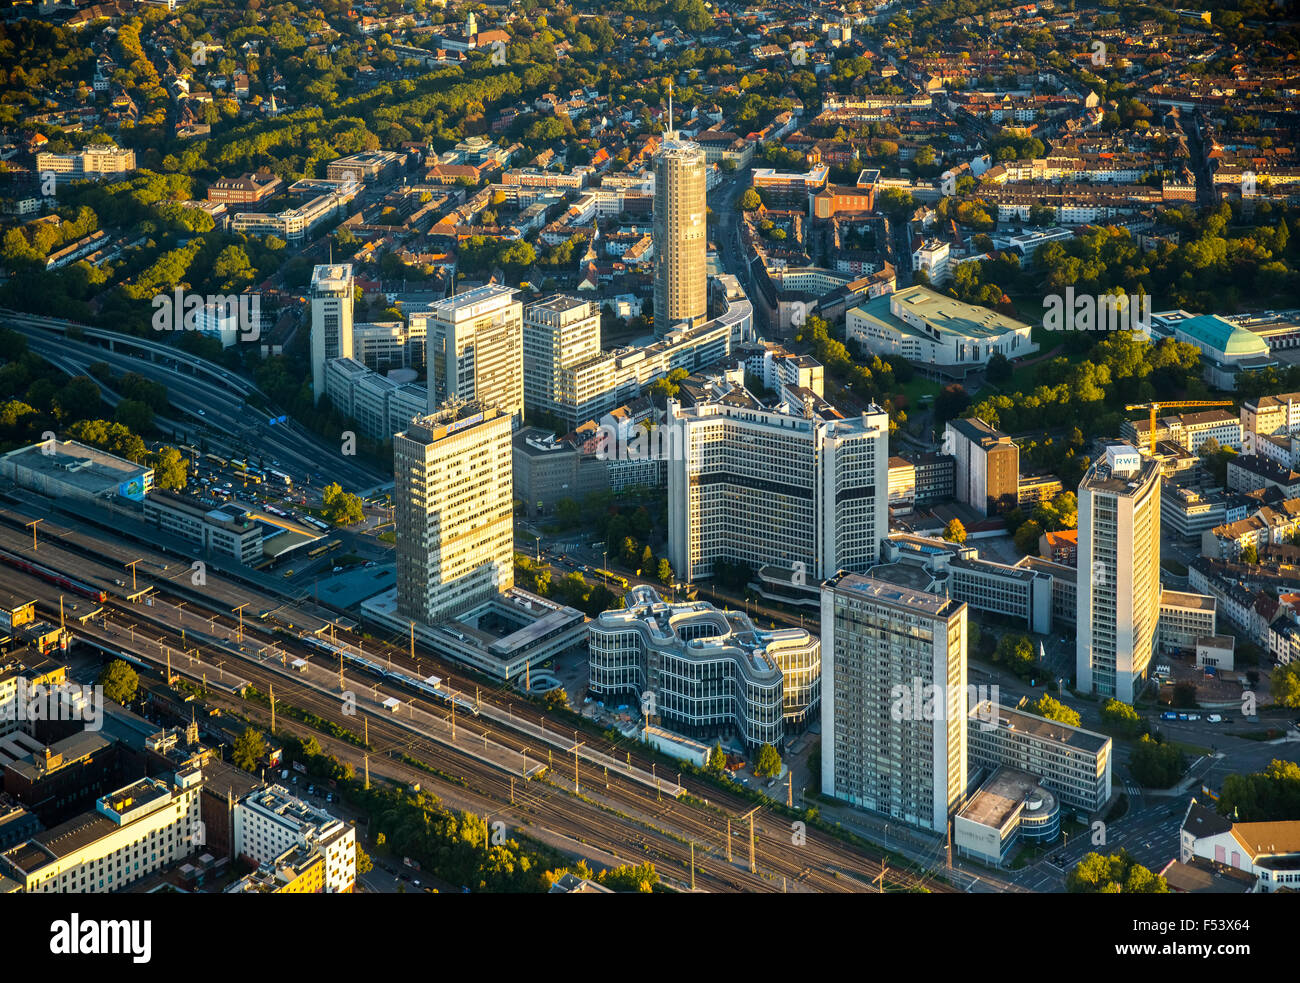 Los rascacielos en Essen, nueva sede corporativa Schenker junto a RAG, Evonik y RWE Torre, Essen, districto de Ruhr Foto de stock